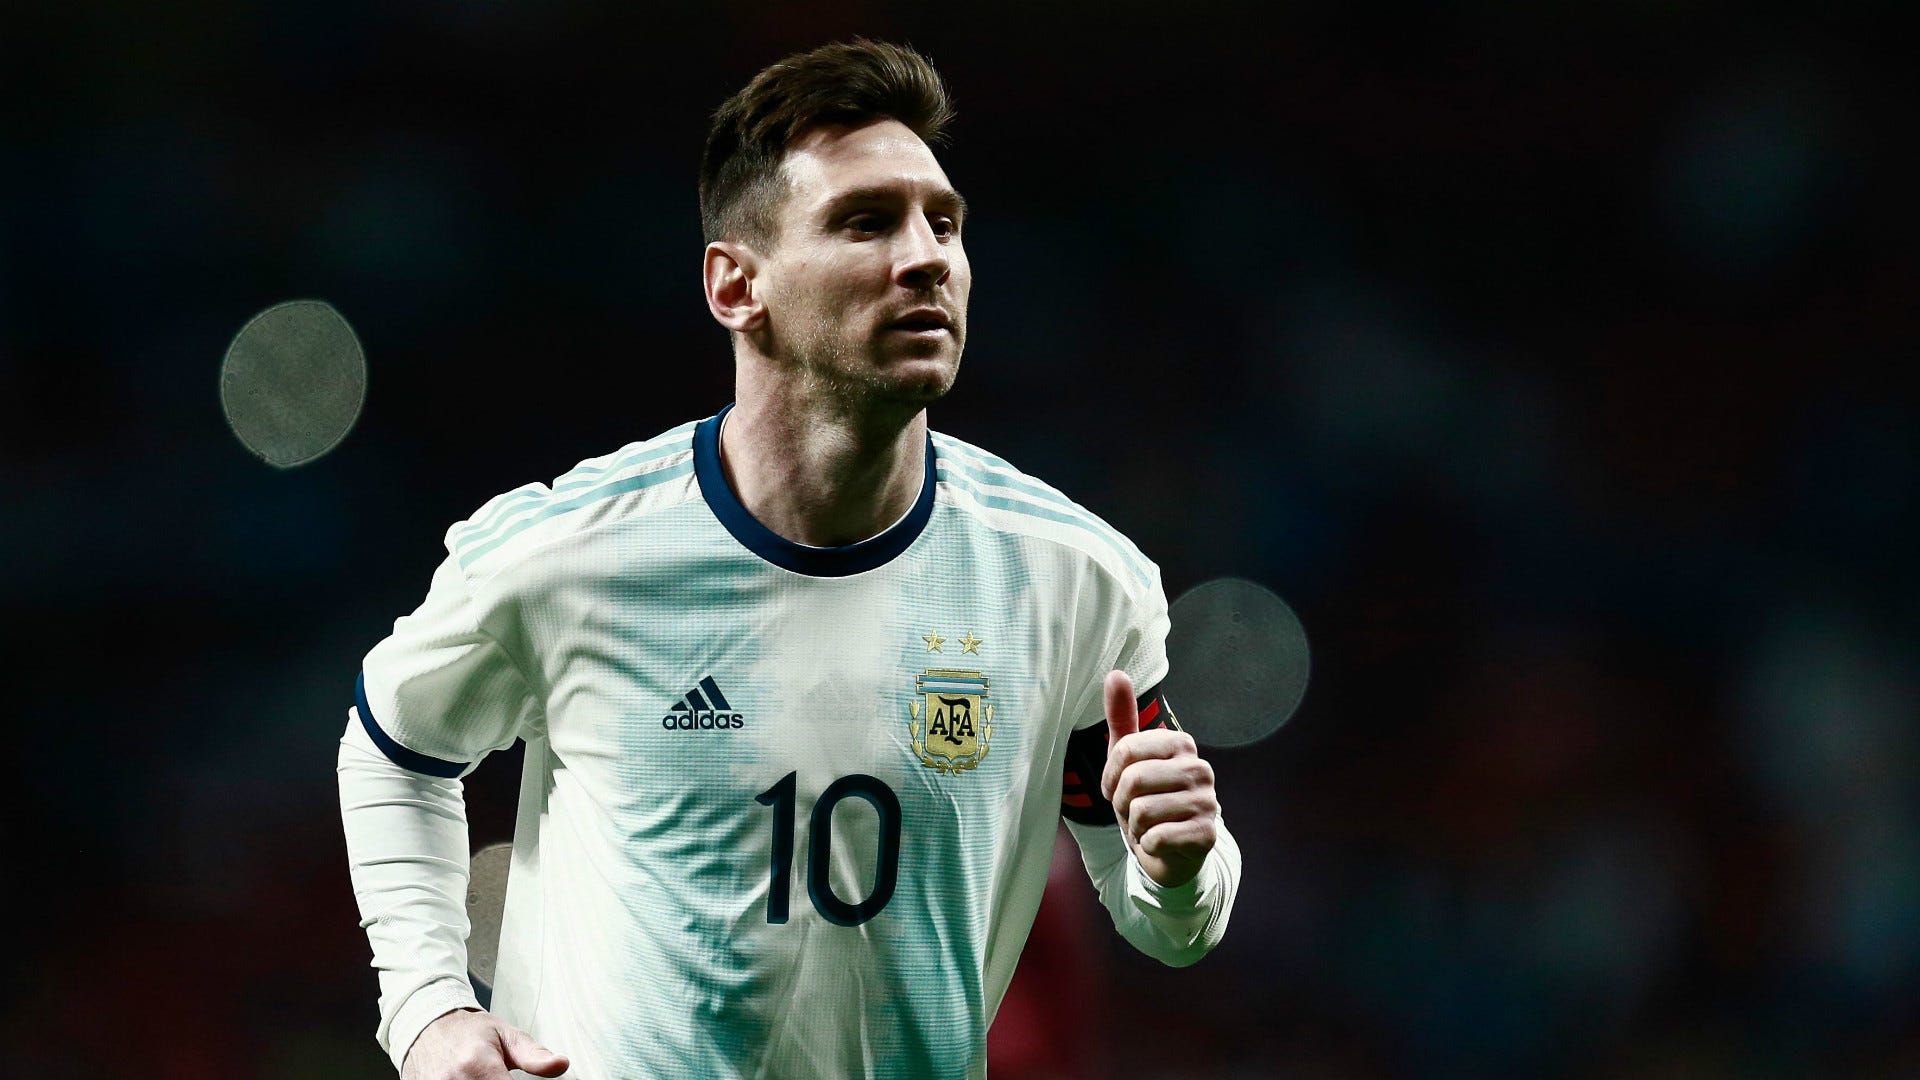 Bức hình của Messi sẽ khiến bạn phải ngắm nhìn mãi không thôi! Siêu sao bóng đá người Argentina này với kỹ thuật điêu luyện và những bàn thắng đẹp mắt luôn thu hút sự chú ý của các fan hâm mộ trên khắp thế giới. Nếu bạn là một fan của Messi, bạn không nên bỏ qua bức hình này!